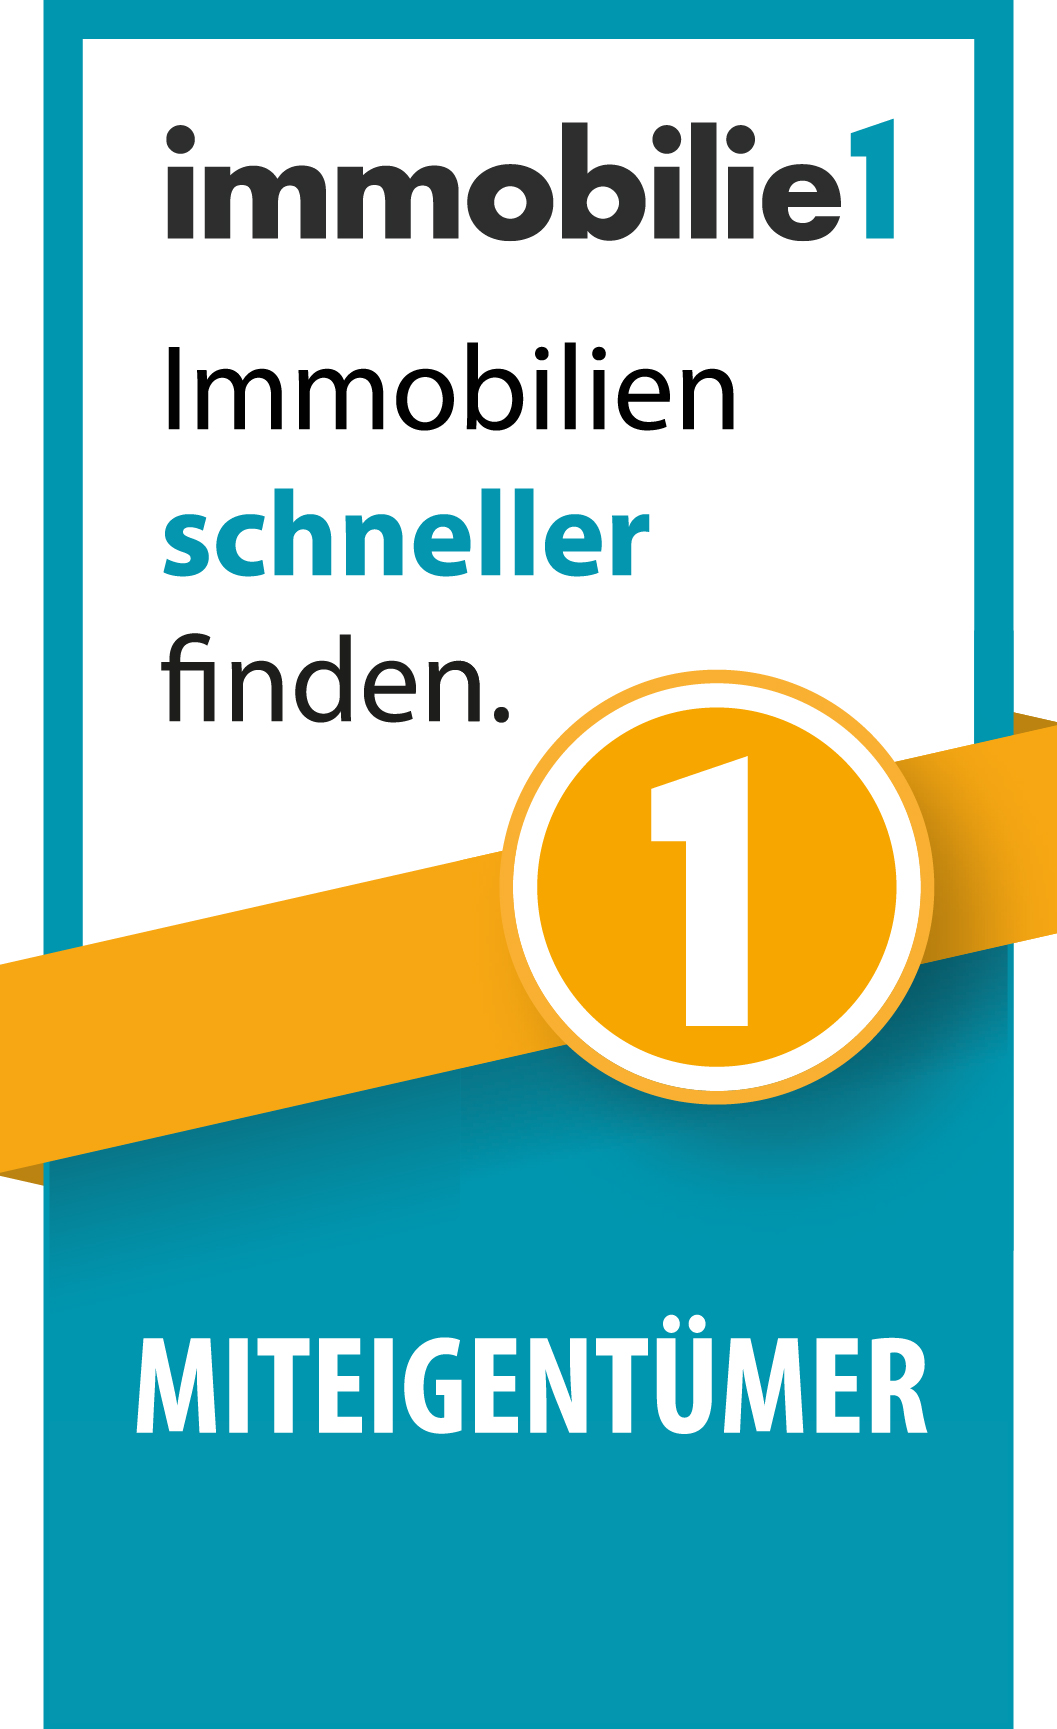 Logo_Immobilie1_Miteigentümer